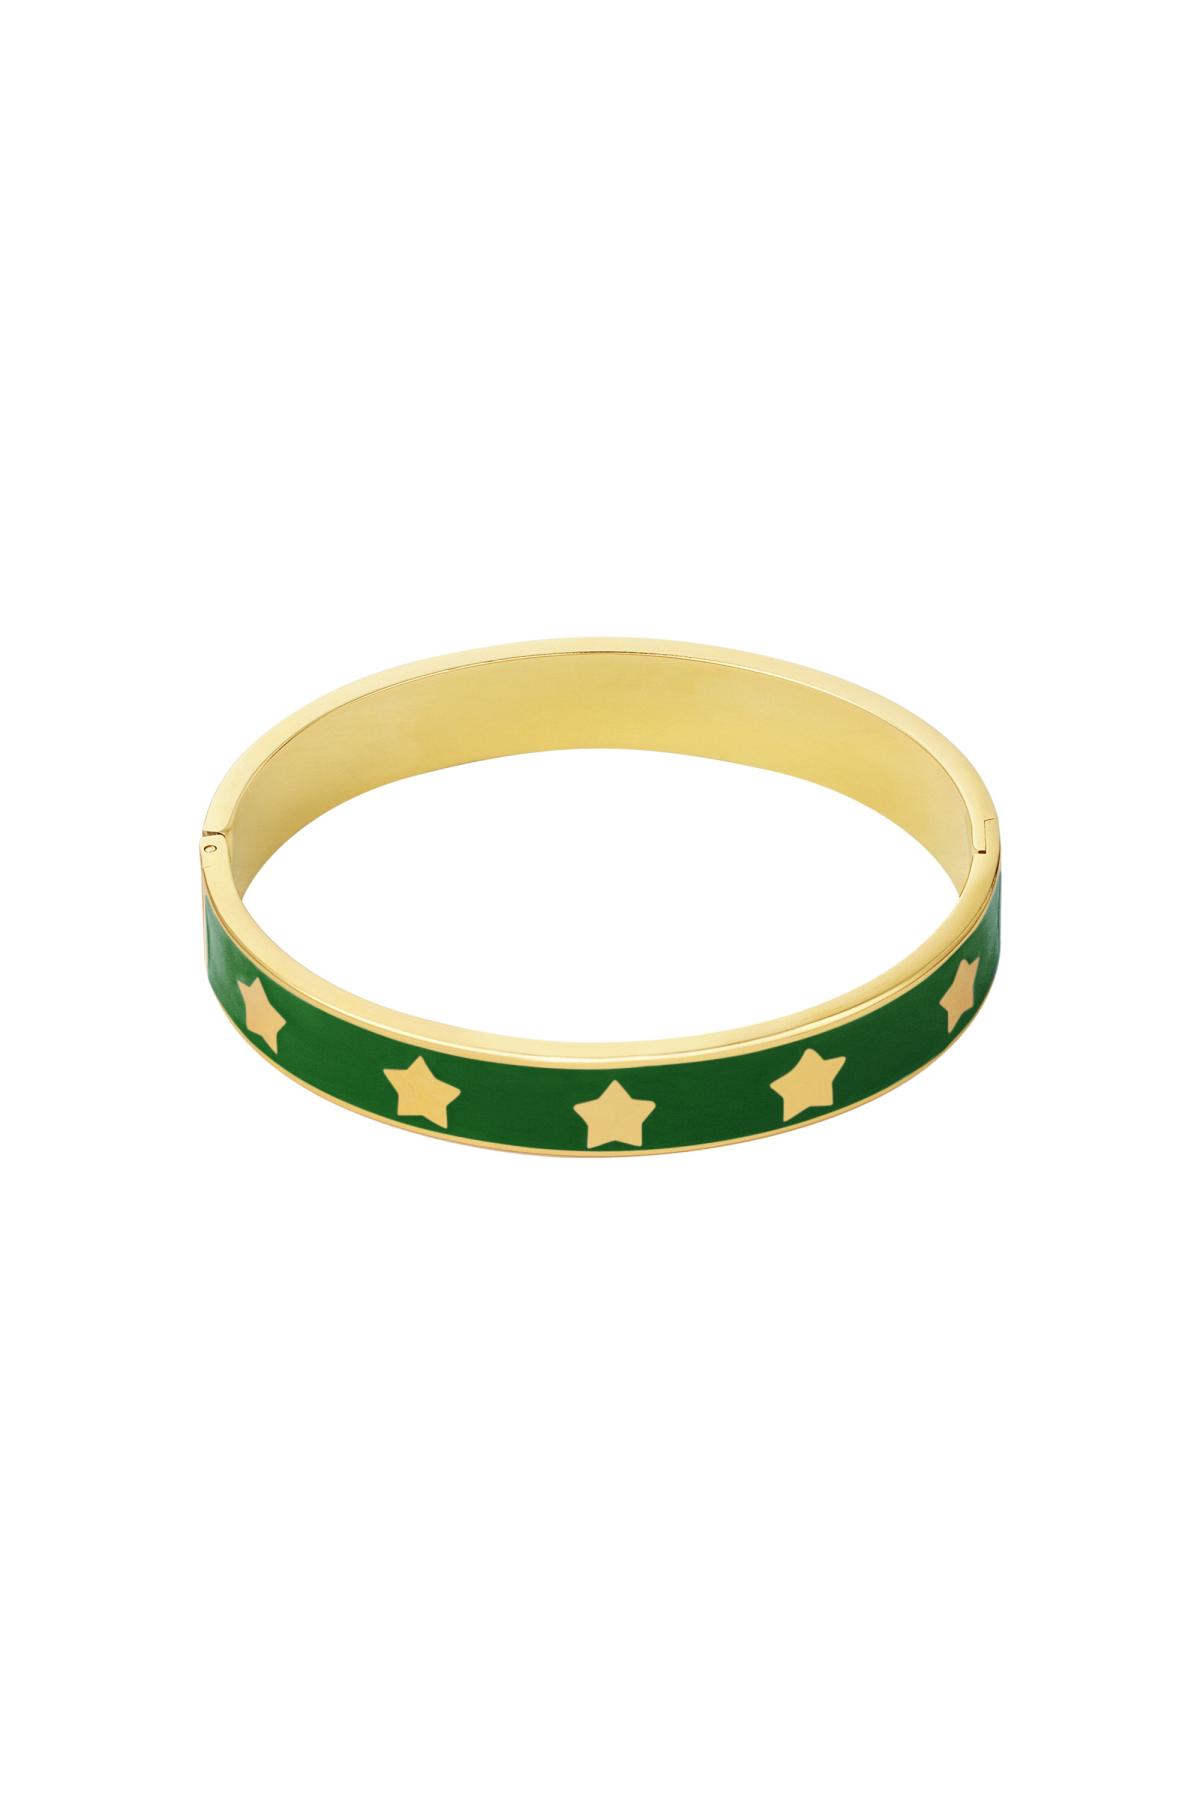 Bangle bracelet enamel stars Green &amp; Gold Stainless Steel